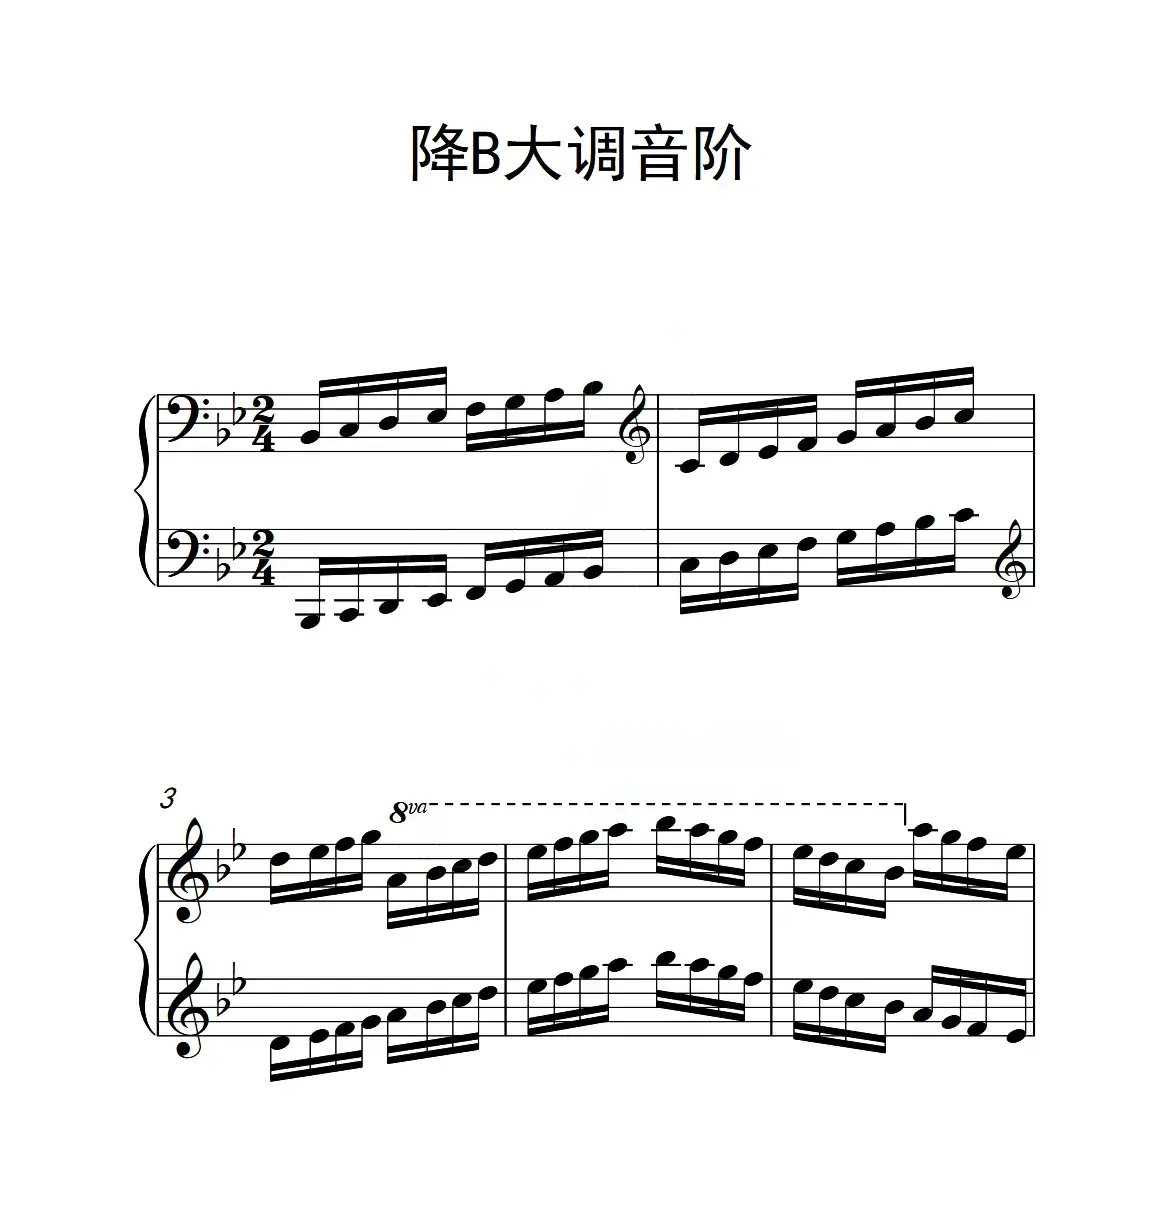 第六级 降B大调音阶（中国音乐学院钢琴考级作品1~6级）